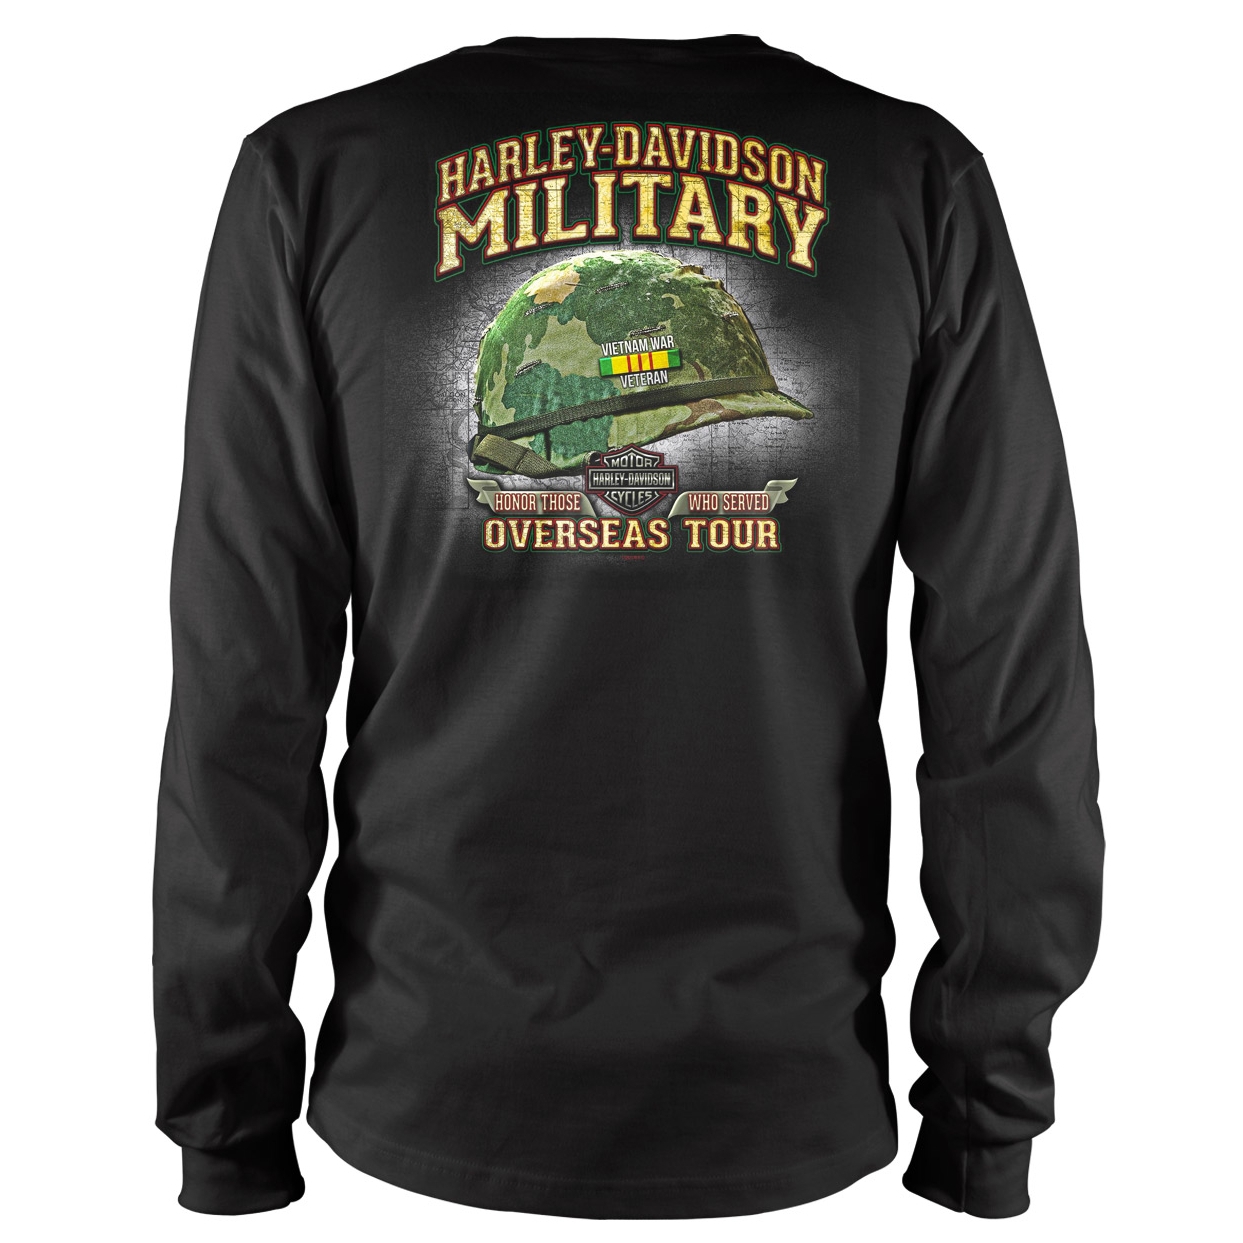 Harley-Davidson Military Bar & Shield Vietnam Veterans - Men's Black Long-Sleeve T-shirt LG